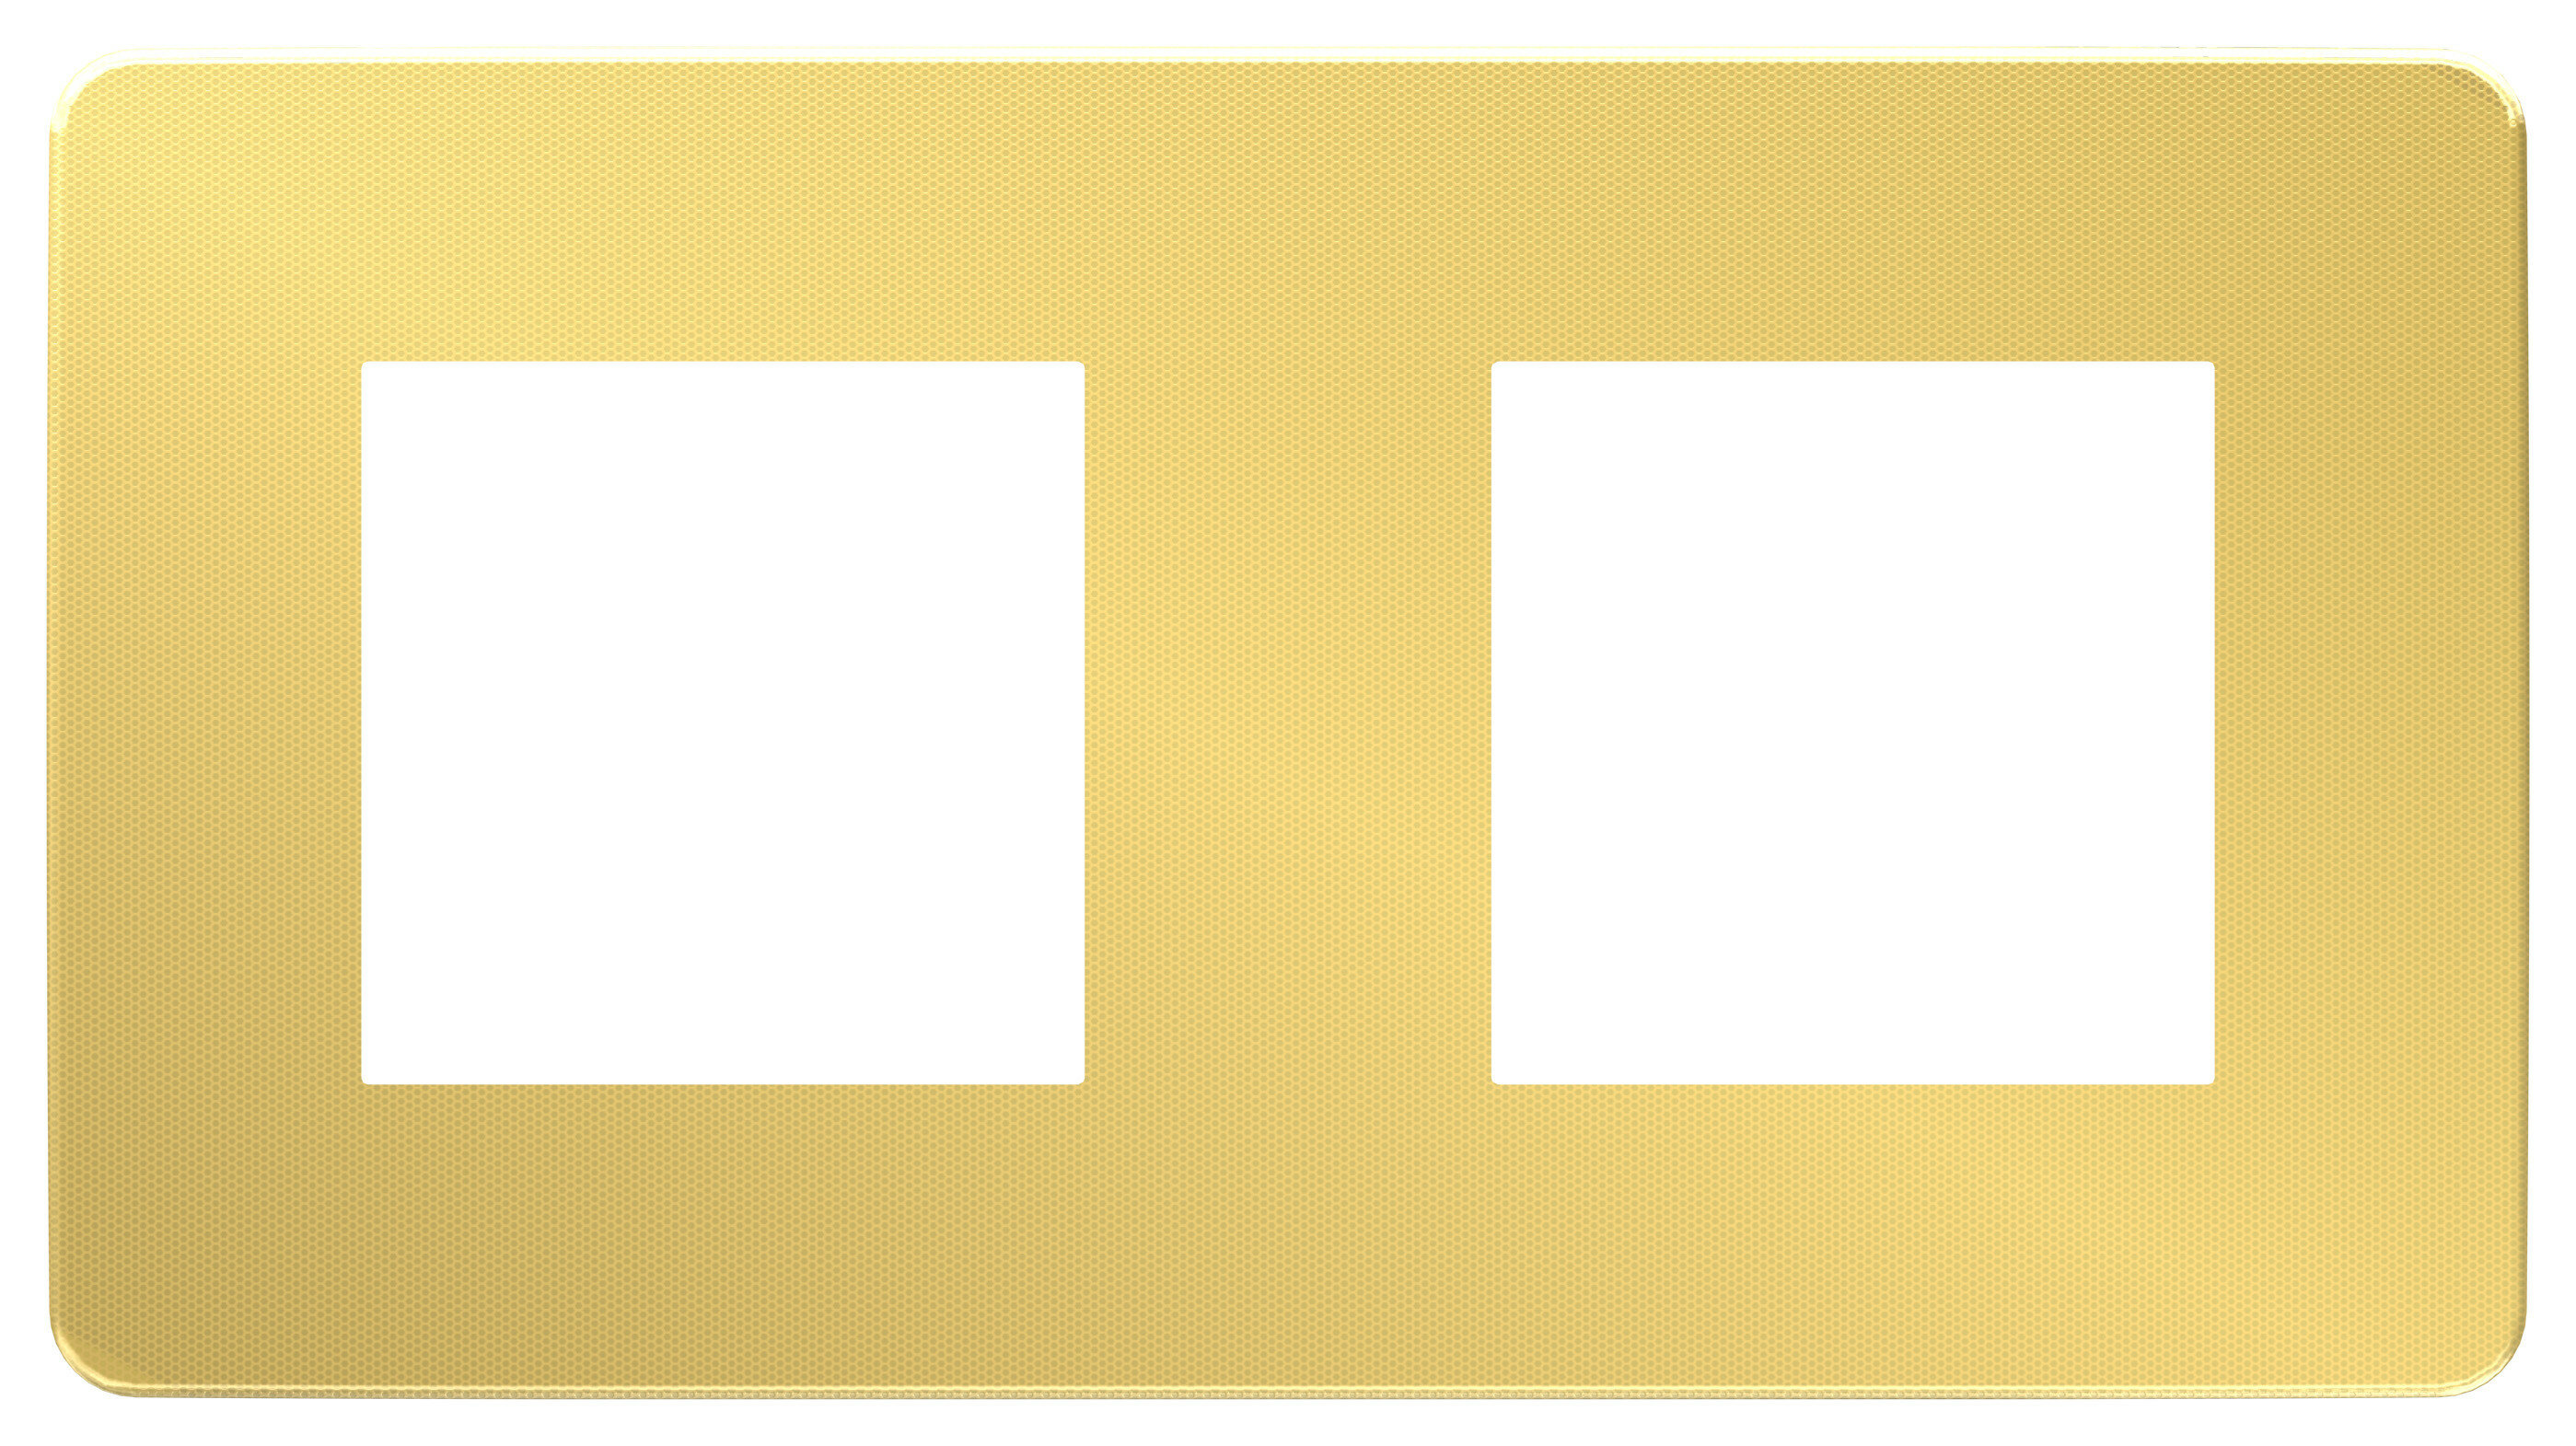 Рамка 2м универсал Unica Studio Metal золото/белый встроенный монтаж (Schneider Electric), арт. NU280459